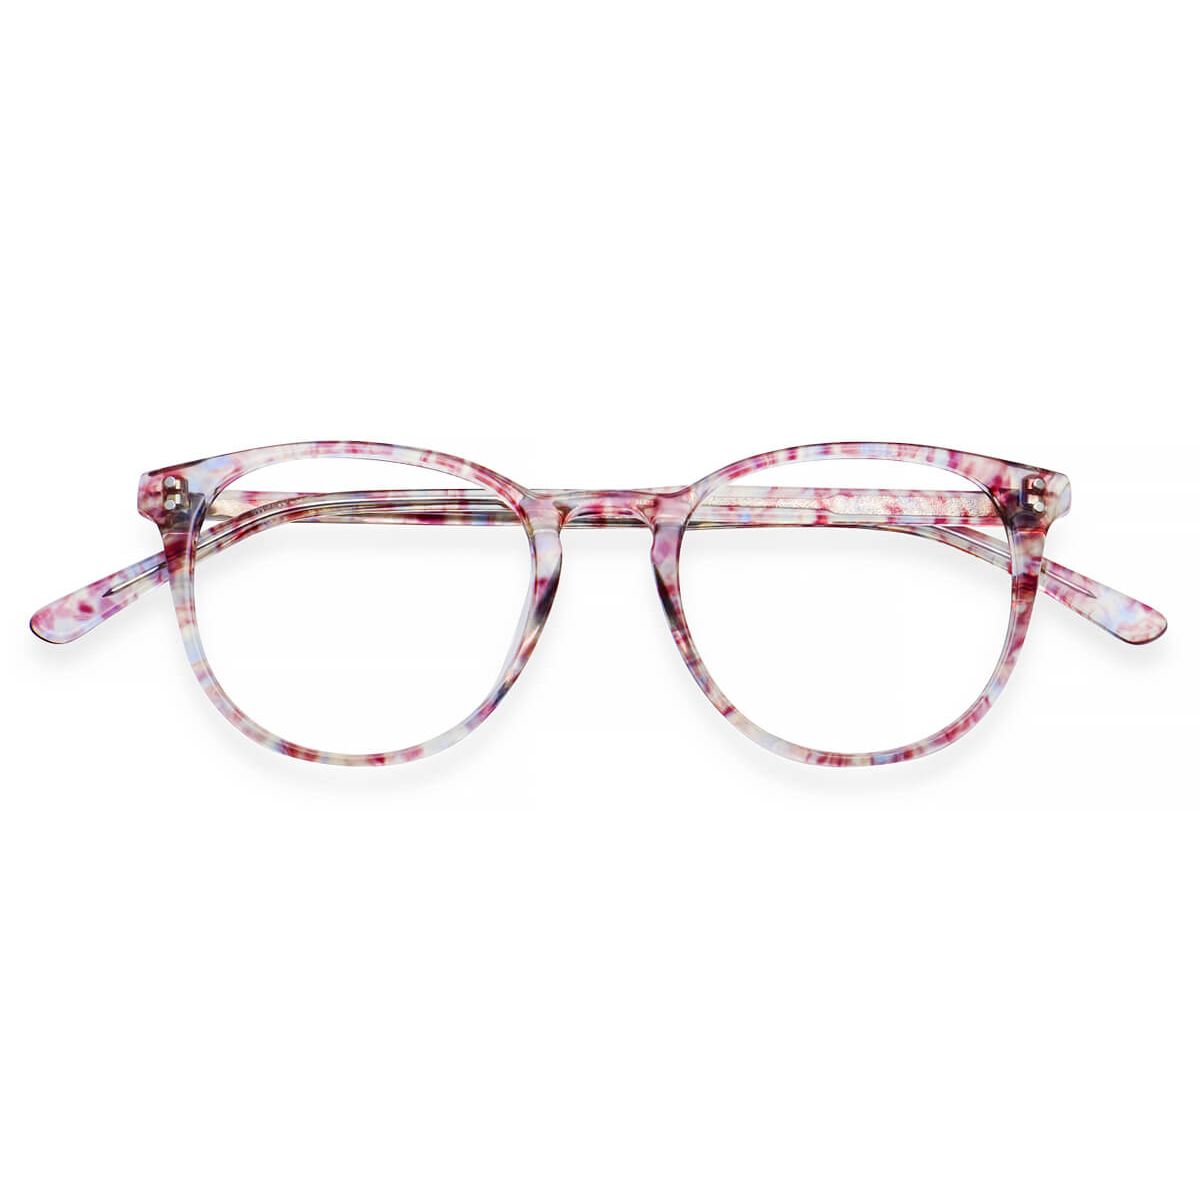 SG-058 Round Floral Eyeglasses Frames | Leoptique